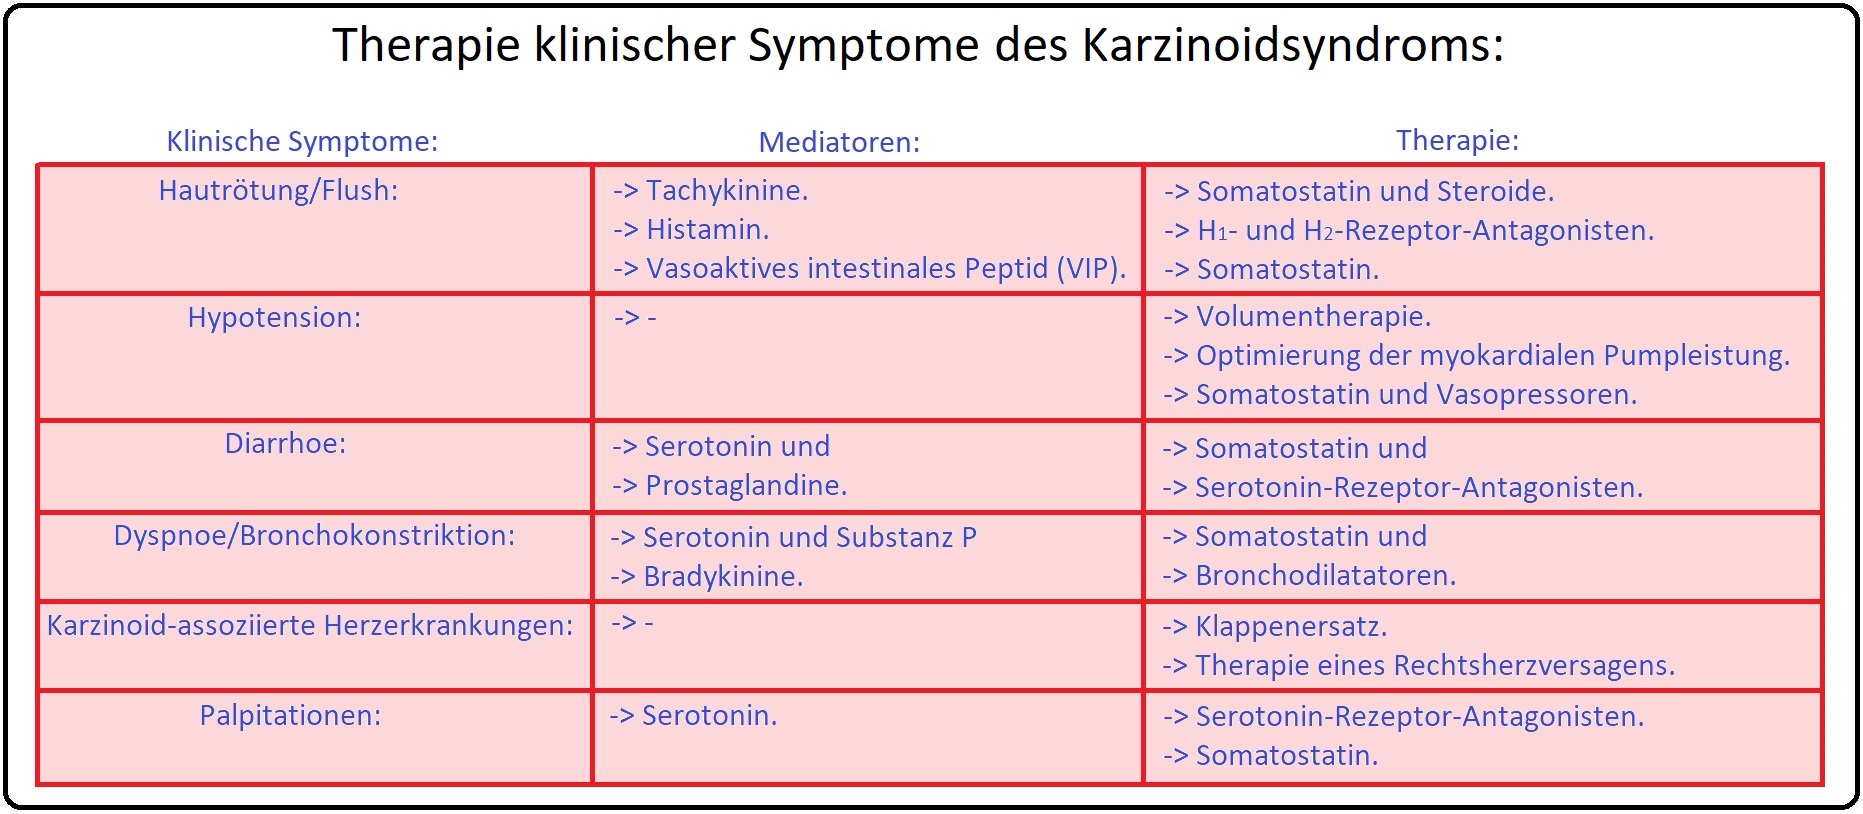 791 Therapie klinischer Symptome des Karzinoidsyndroms